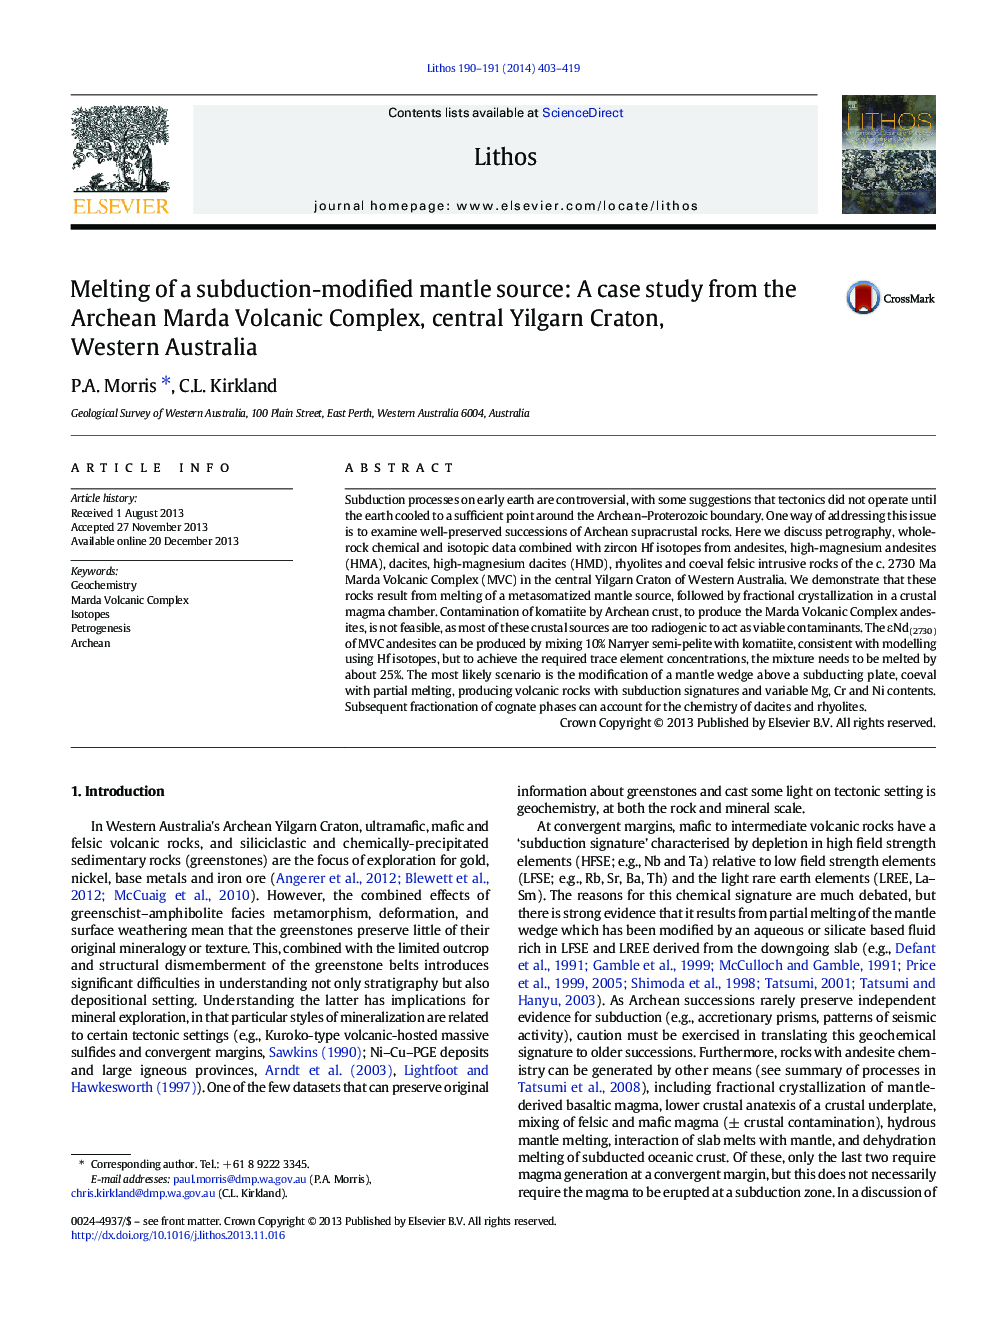 ذوب شدن یک منبع انحناء اصلاح شده فرابنفش: مطالعه موردی از مجتمع آتشفشانی آرچین موردا، مرکزی ییلگرن کراتون، استرالیای غربی 